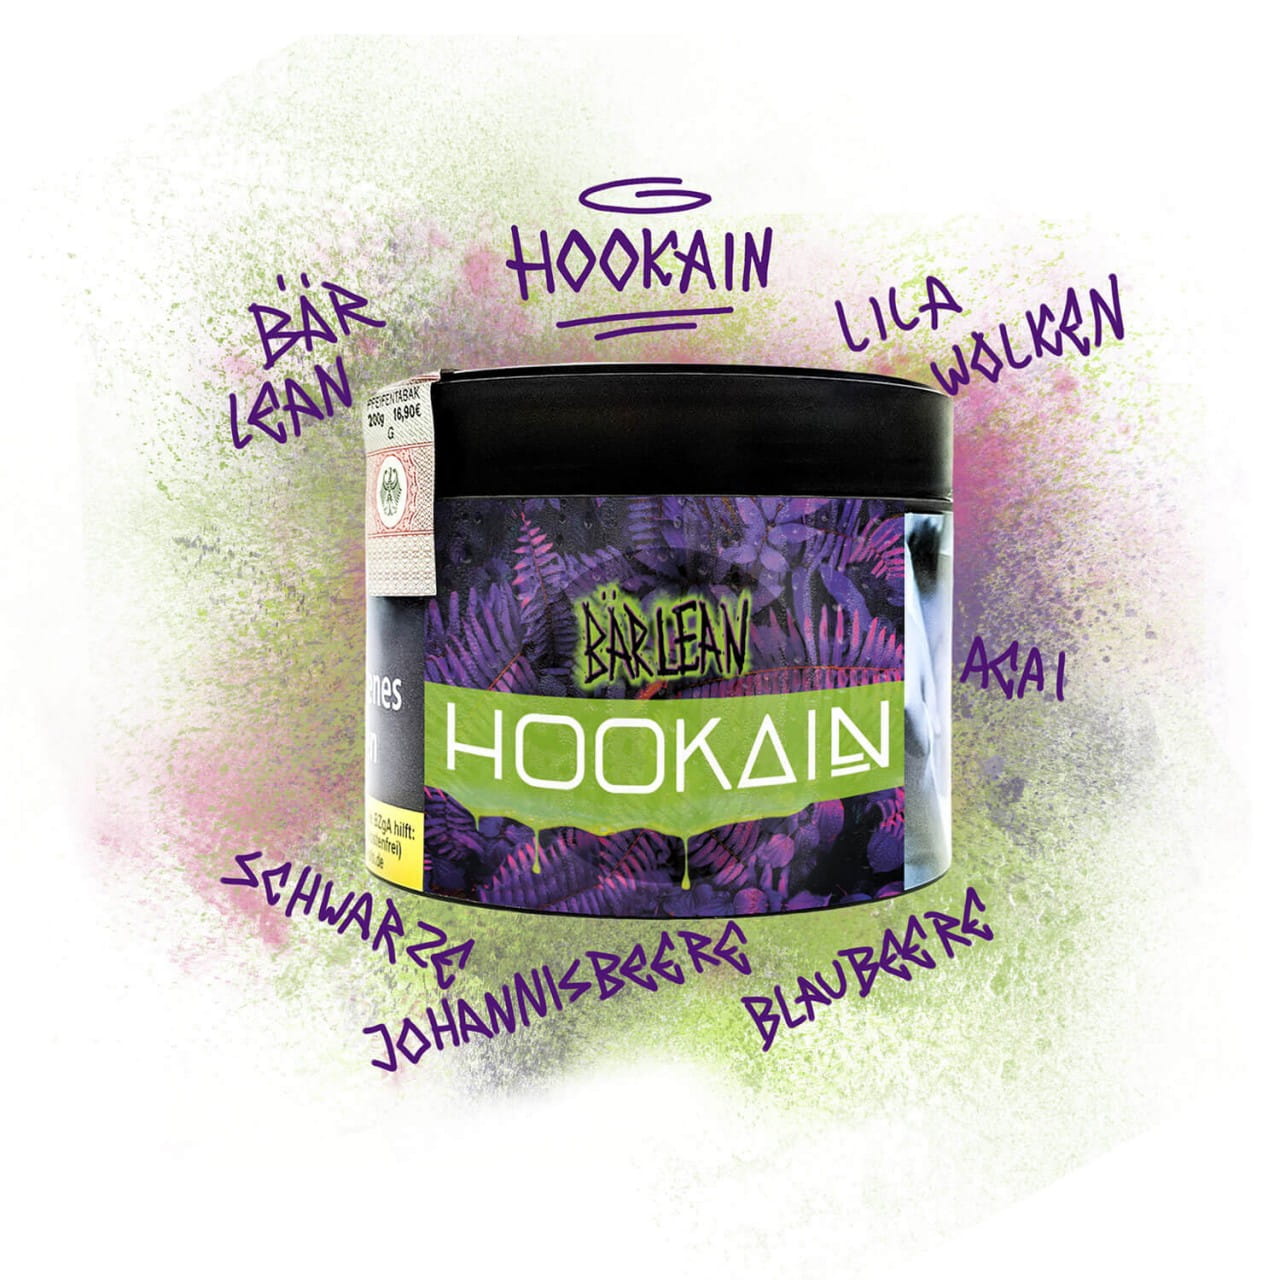 Hookain Tabak - Bär Lean 200 g unter Shisha Tabak / Hookain Tabak